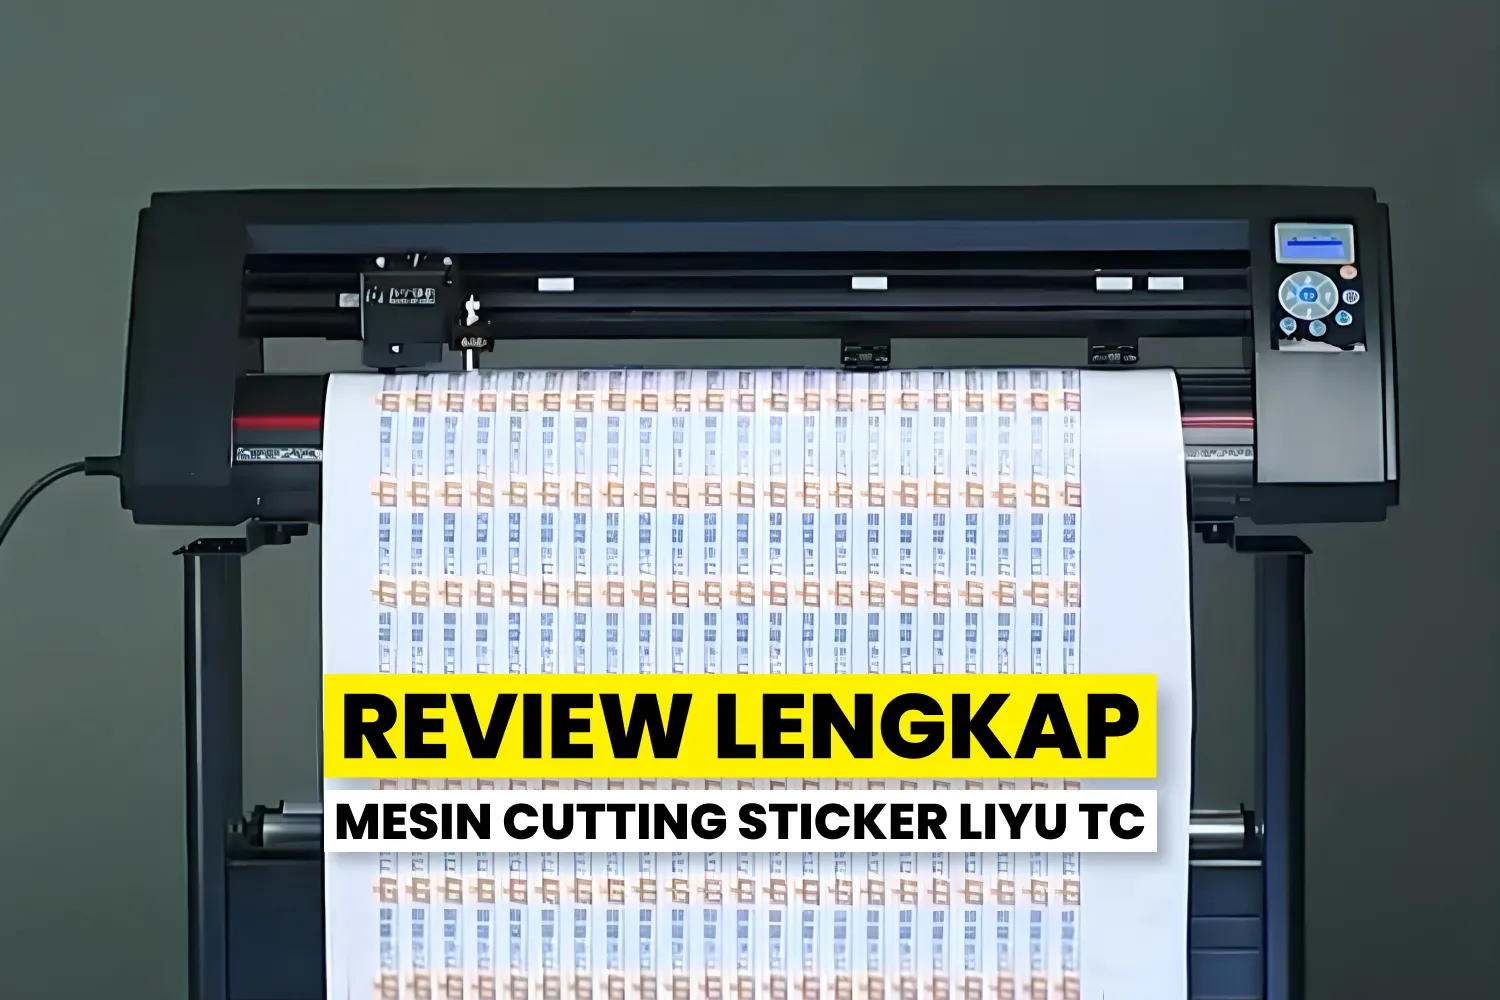 Mesin Cutting Sticker Liyu Tc Dengan Fitur Contour Cut Untuk Berbagai Kebutuhan Percetakan.